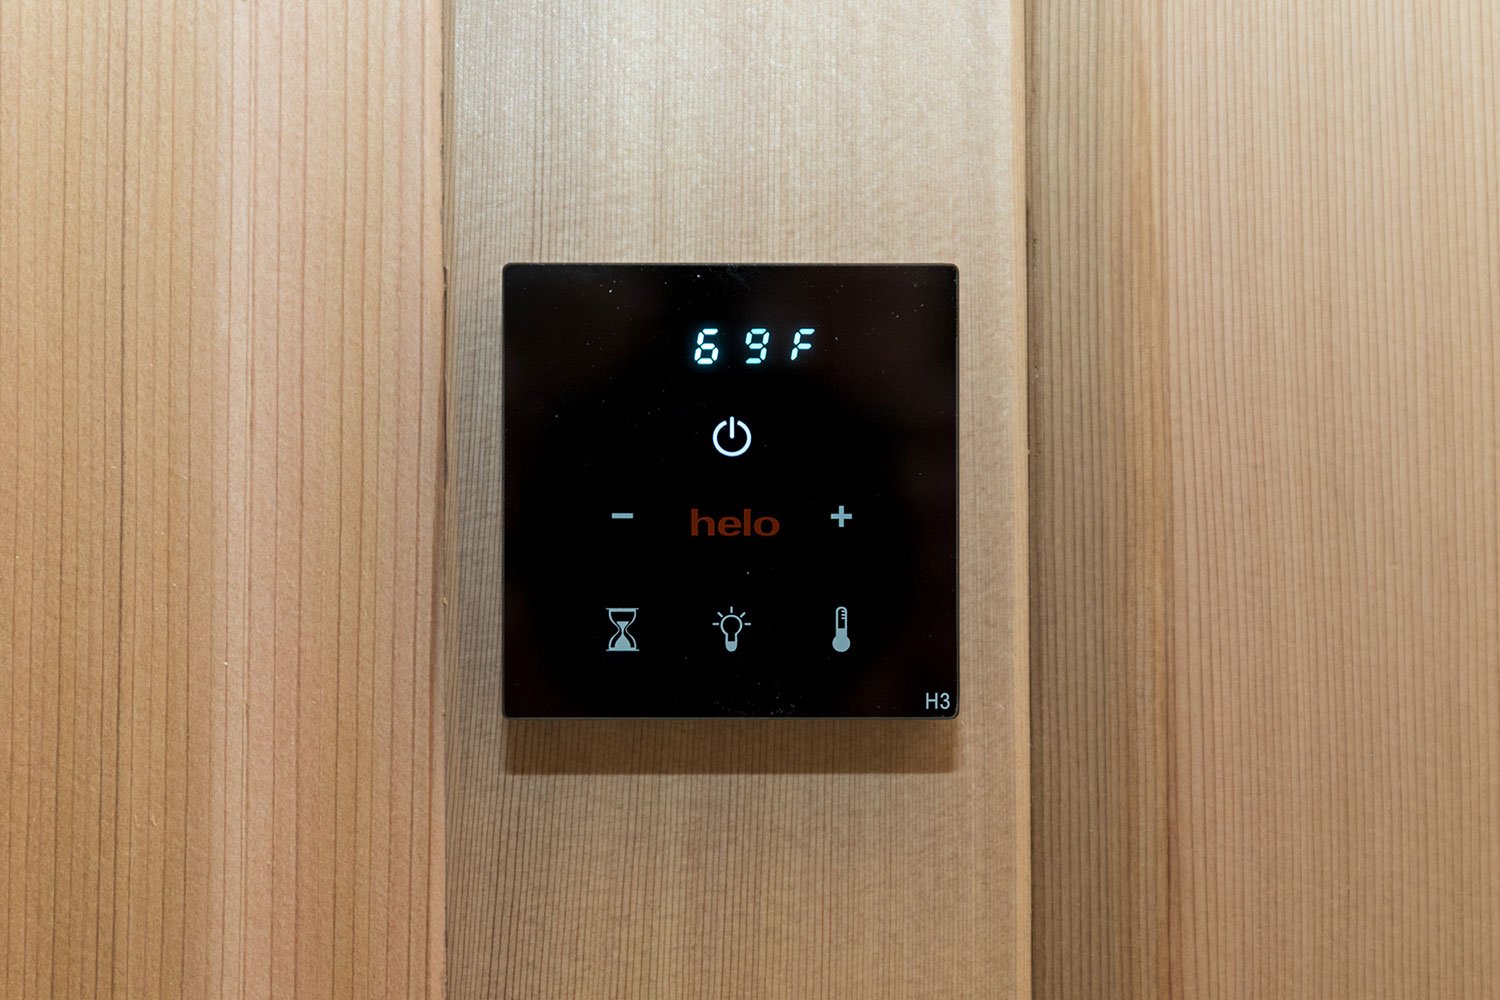 Commercial sauna controls